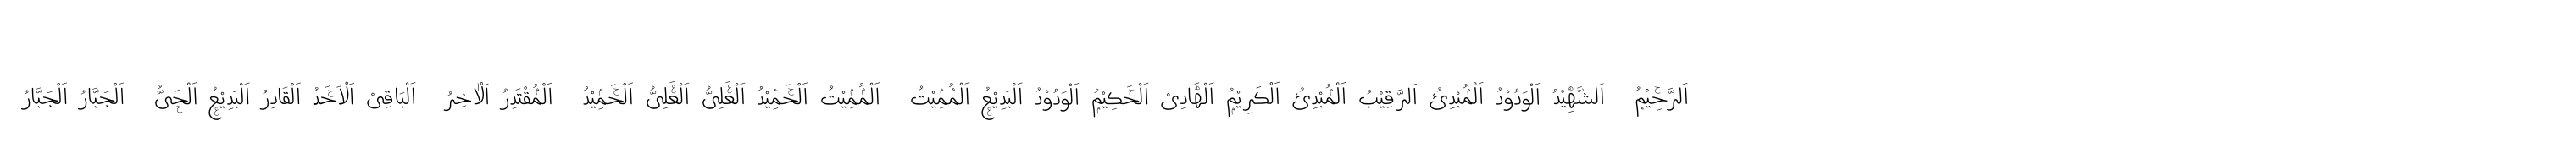 99 Names of ALLAH Handwriting 2